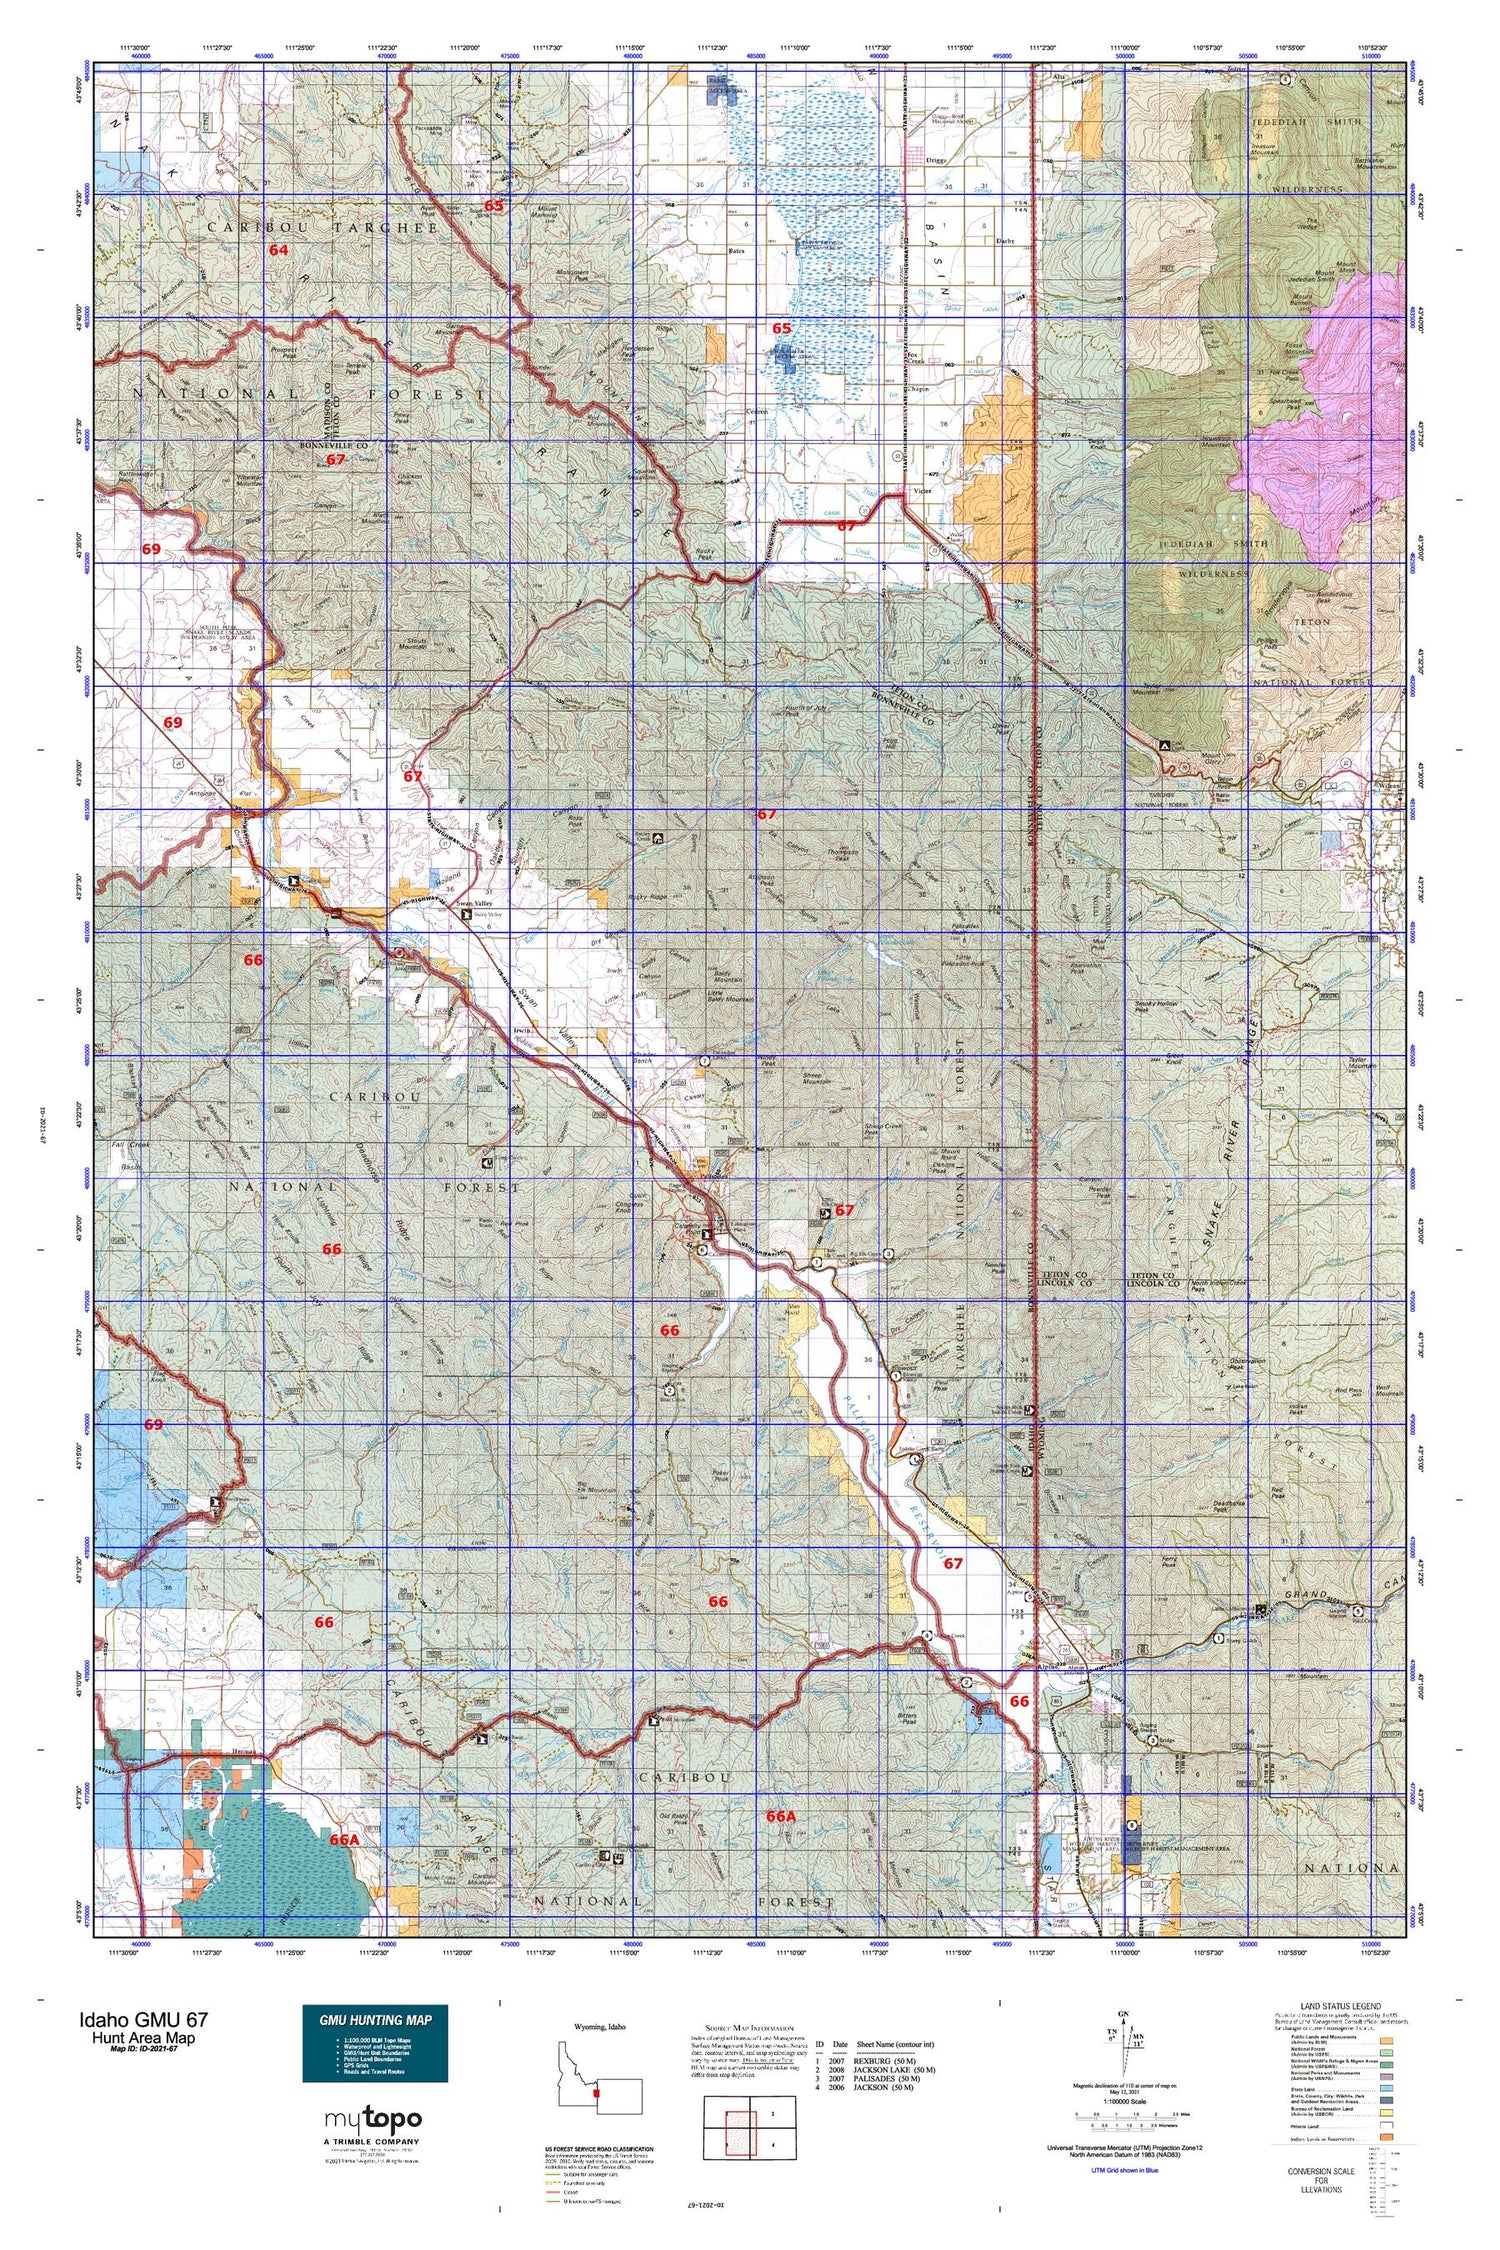 Idaho GMU 67 Map Image